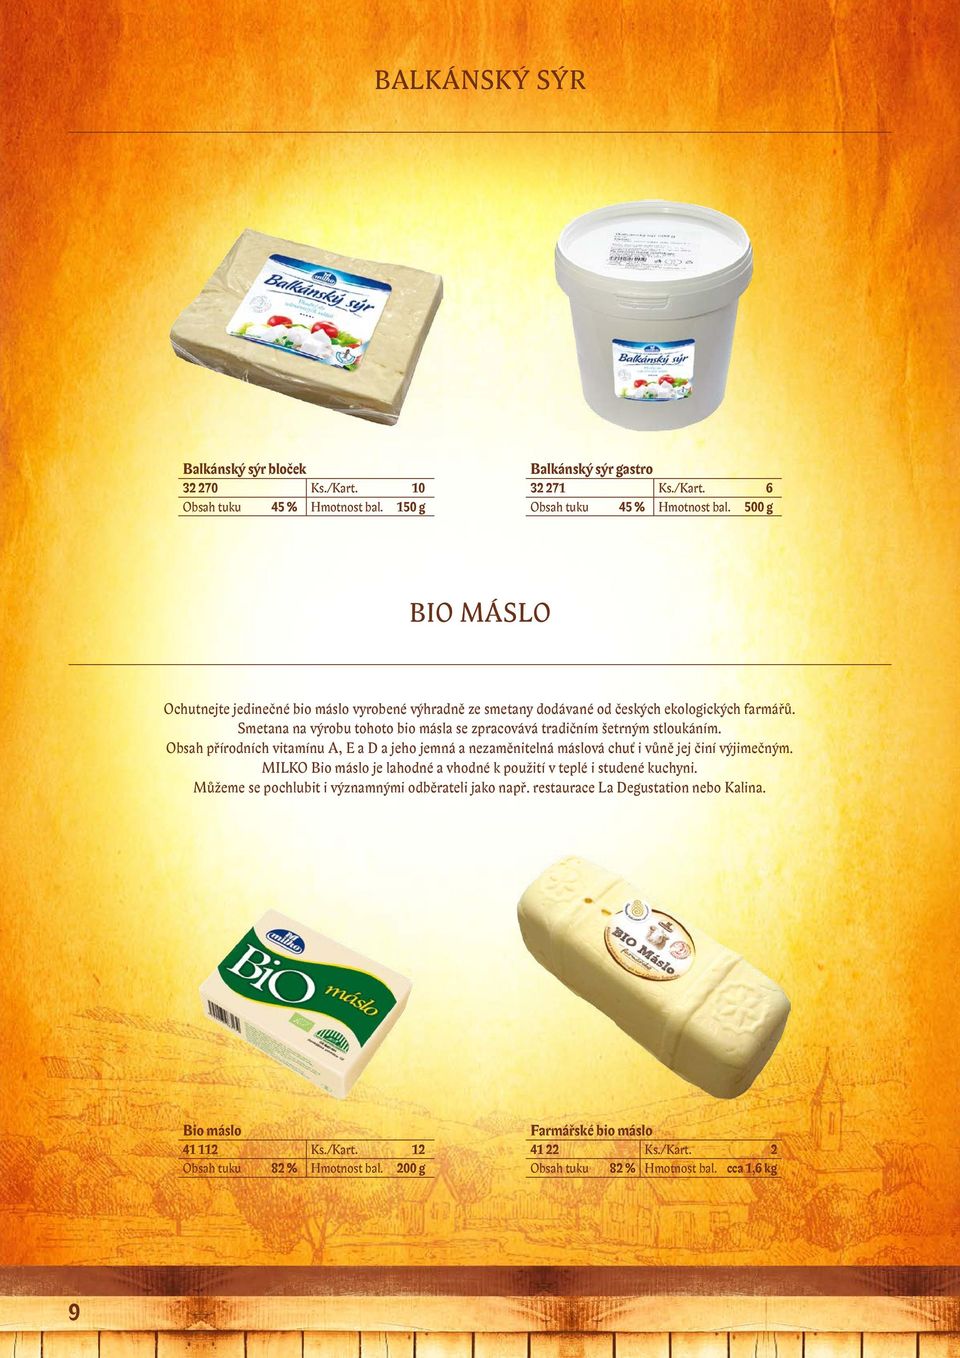 Smetana na výrobu tohoto bio másla se zpracovává tradičním šetrným stloukáním. Obsah přírodních vitamínu A, E a D a jeho jemná a nezaměnitelná máslová chuť i vůně jej činí výjimečným.